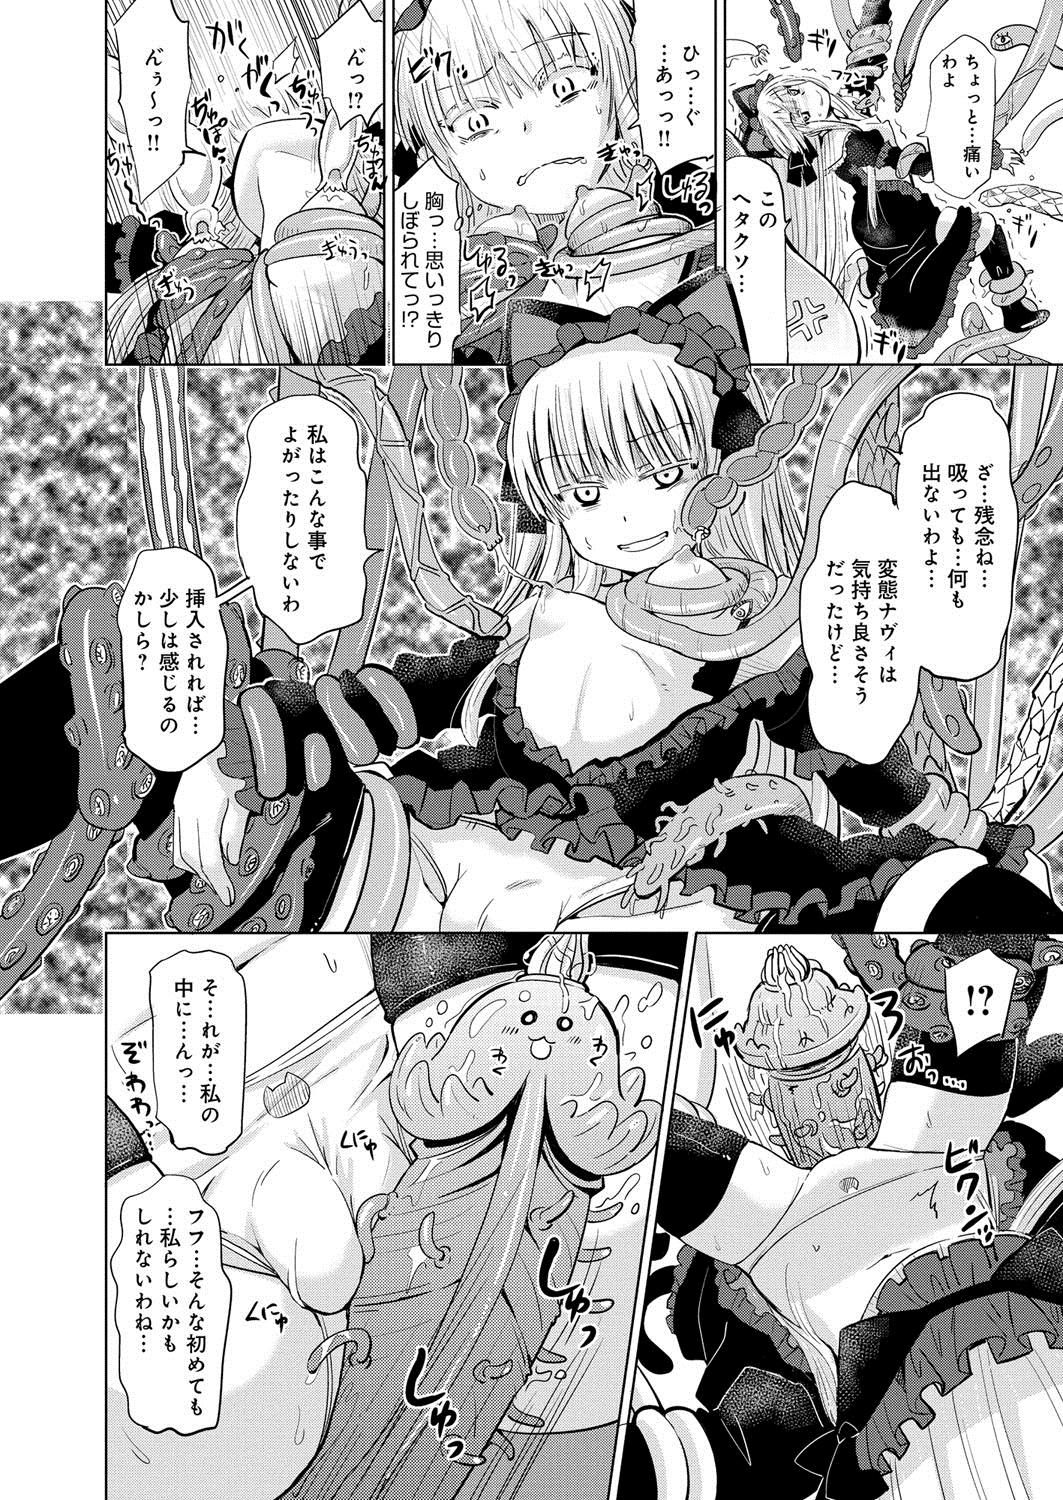 [Anthology] Lord of Valkyrie Adult - Comic Anthology R18 Handakara Saigomade... Mou, Kishi-sama no Ecchi♪ 70